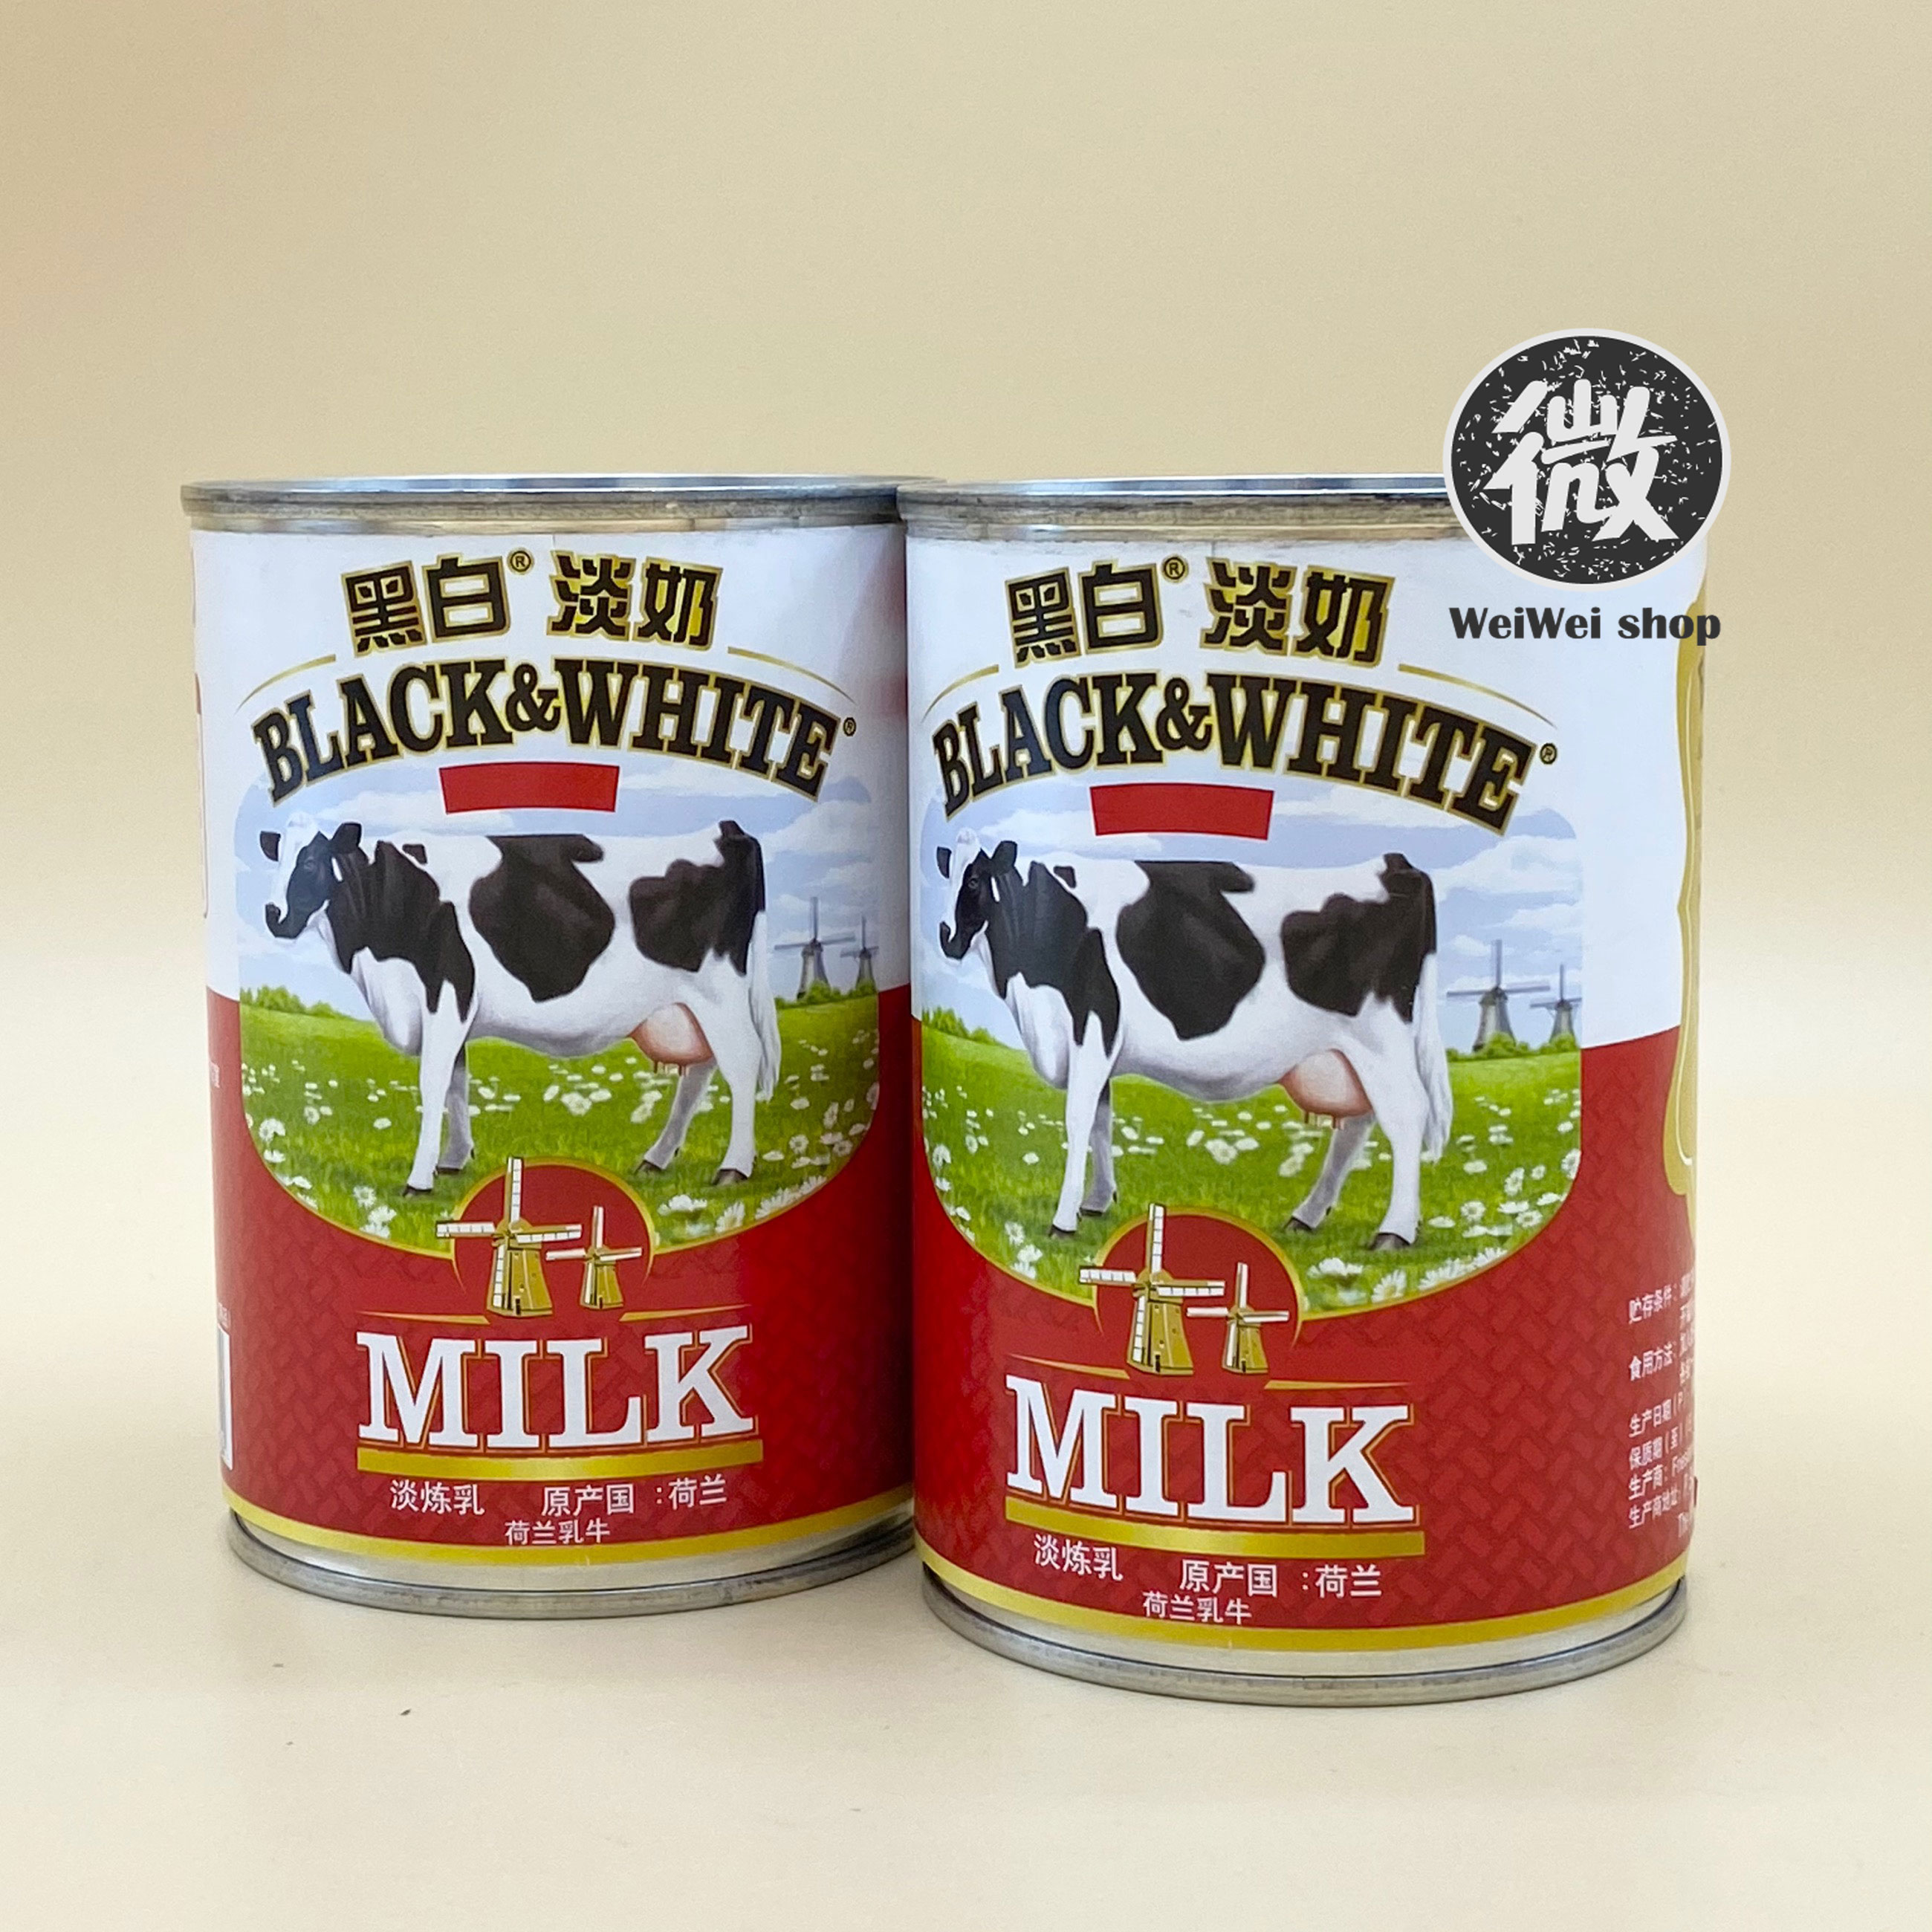 นมสด ยี่ห้อ Black&White ผลิตจากนมวัวแท้ 100% จากฮอลแลนด์ เคล็ดลับความอร่อยหอมละมุนของชานมฮ่องกง 410g